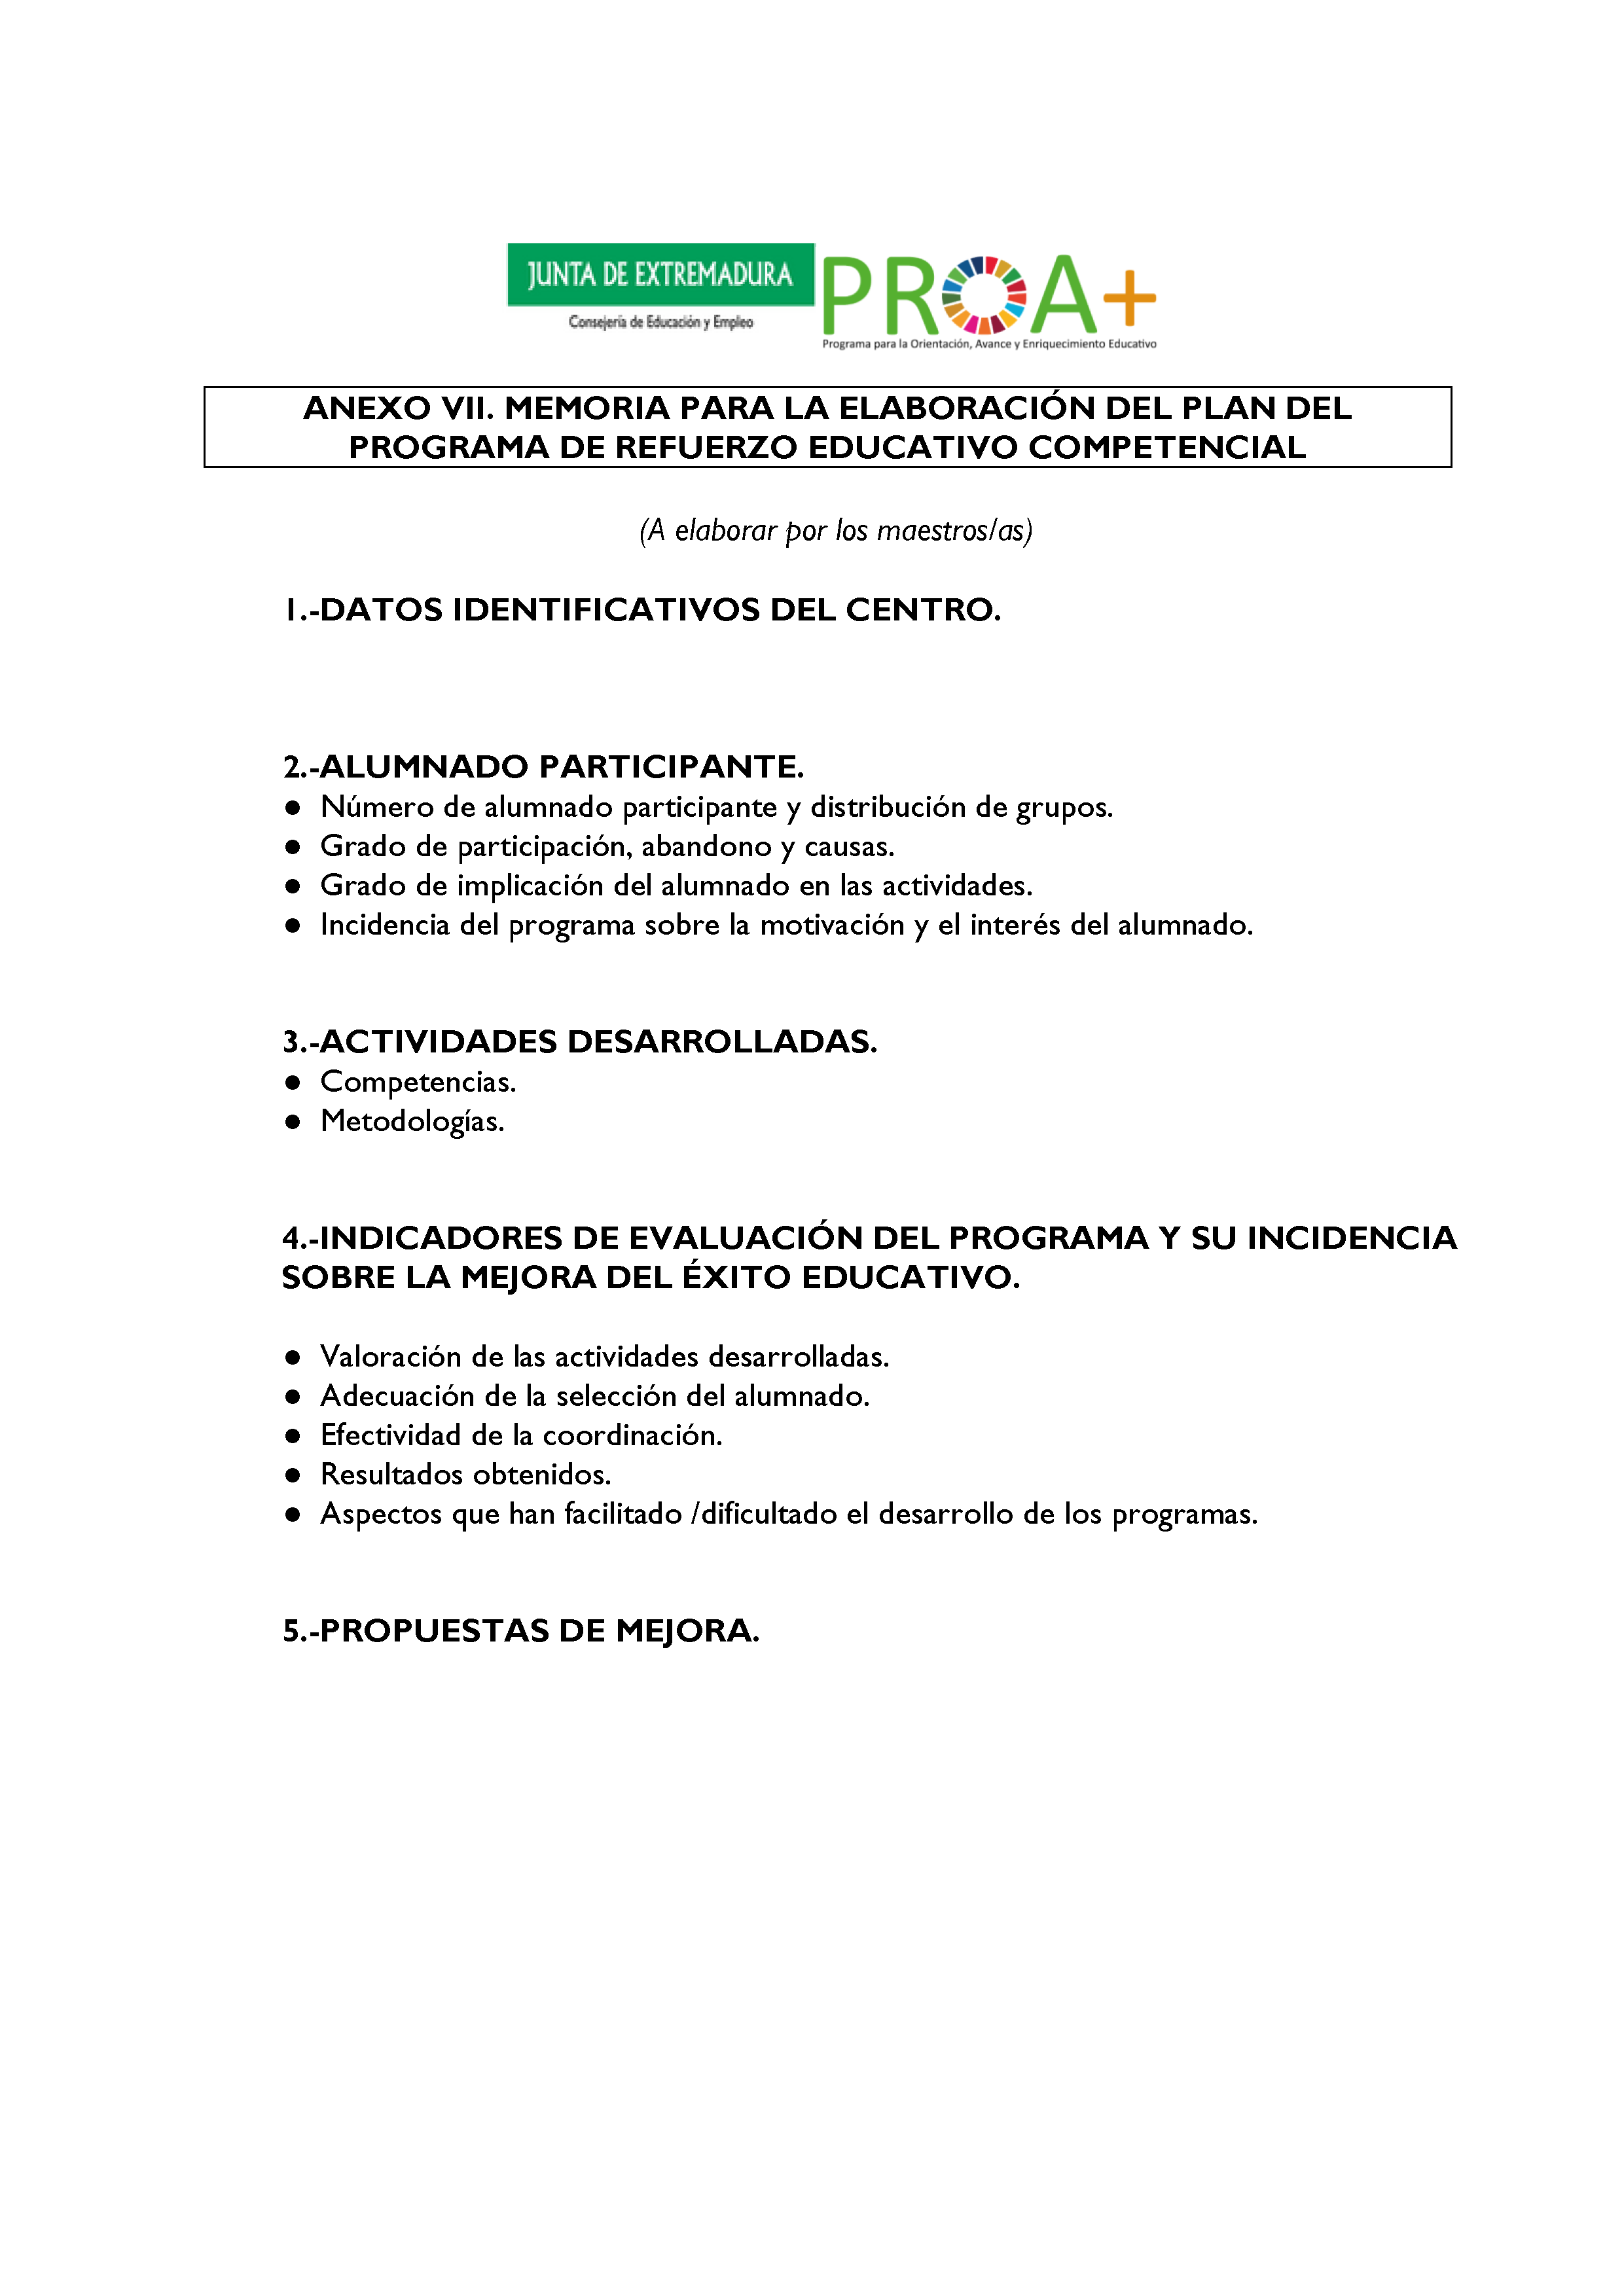 ANEXO I. ORGANIZACIÓN Y FUNCIONAMIENTO DE LOS PROGRAMAS DE REFUERZO EDUCATIVO COMPETENCIAL. Pag 10